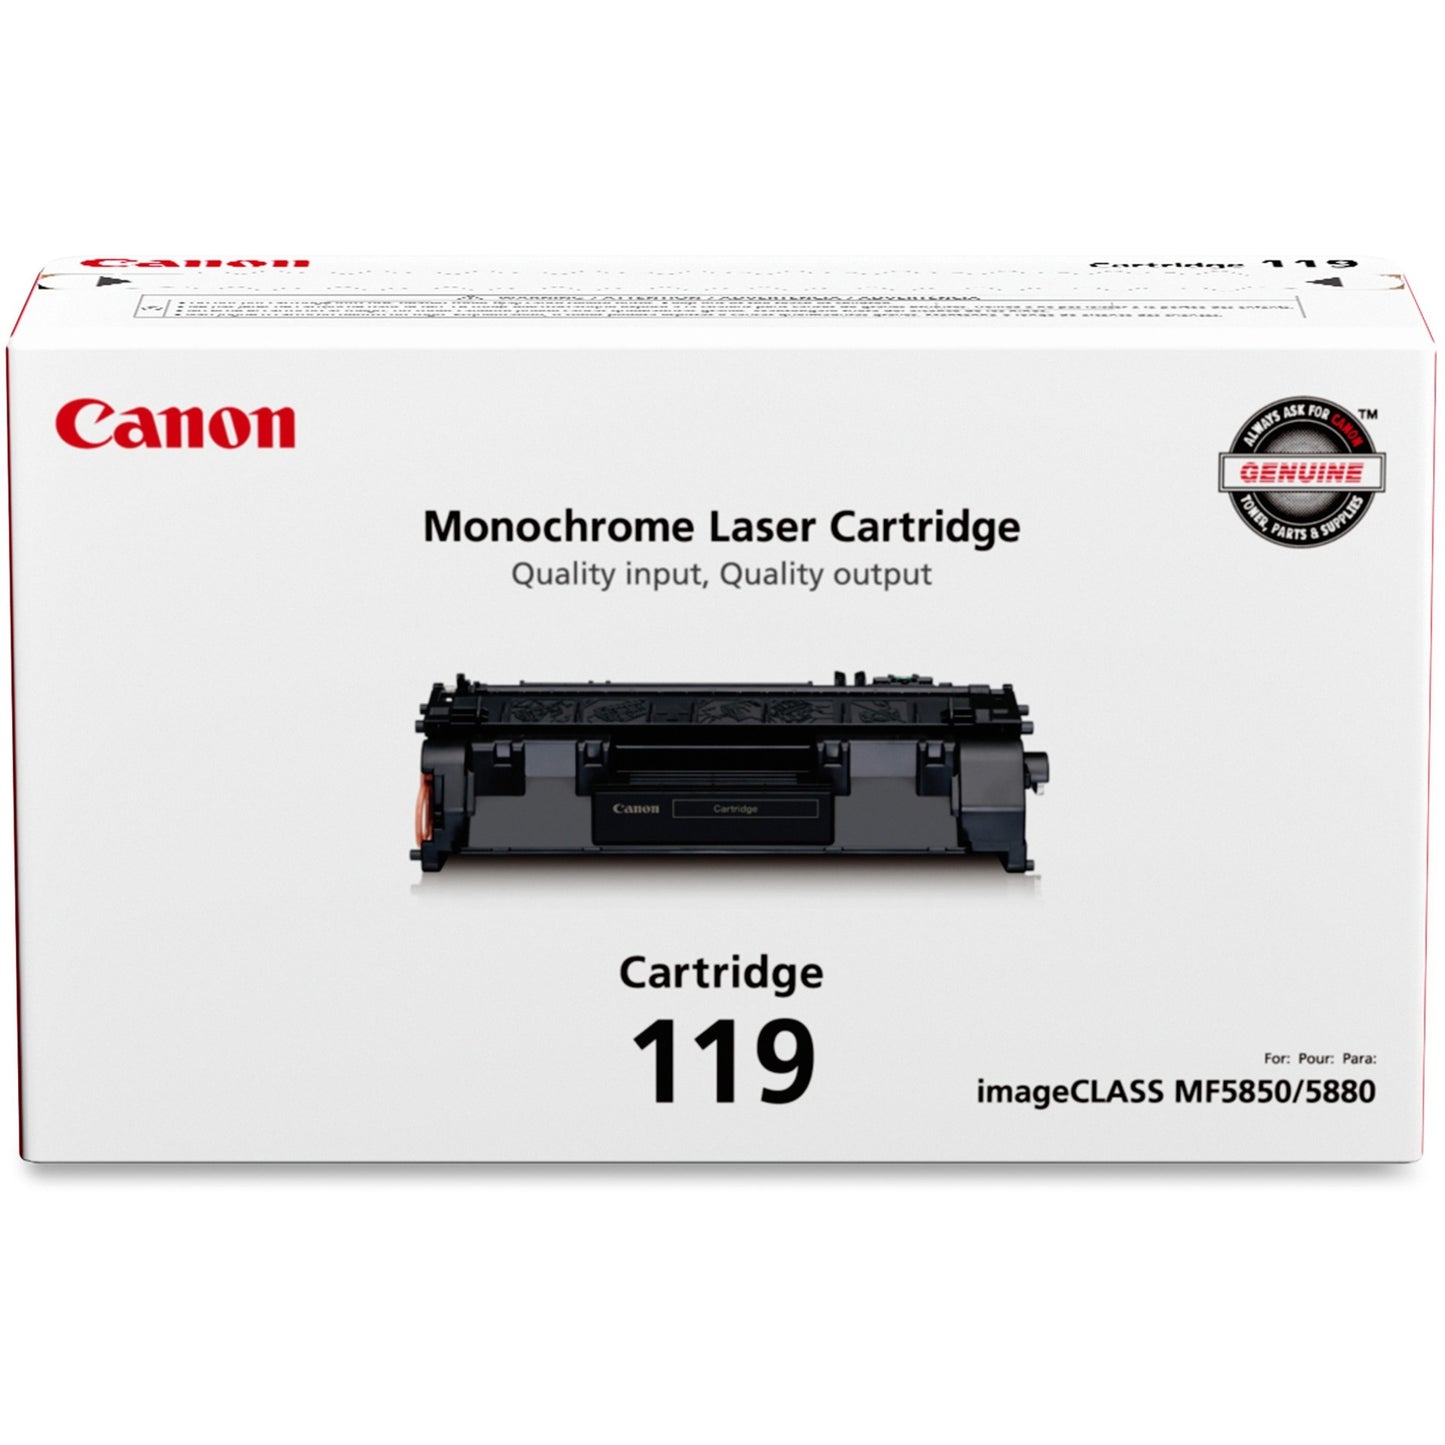 Canon Original Toner Cartridge